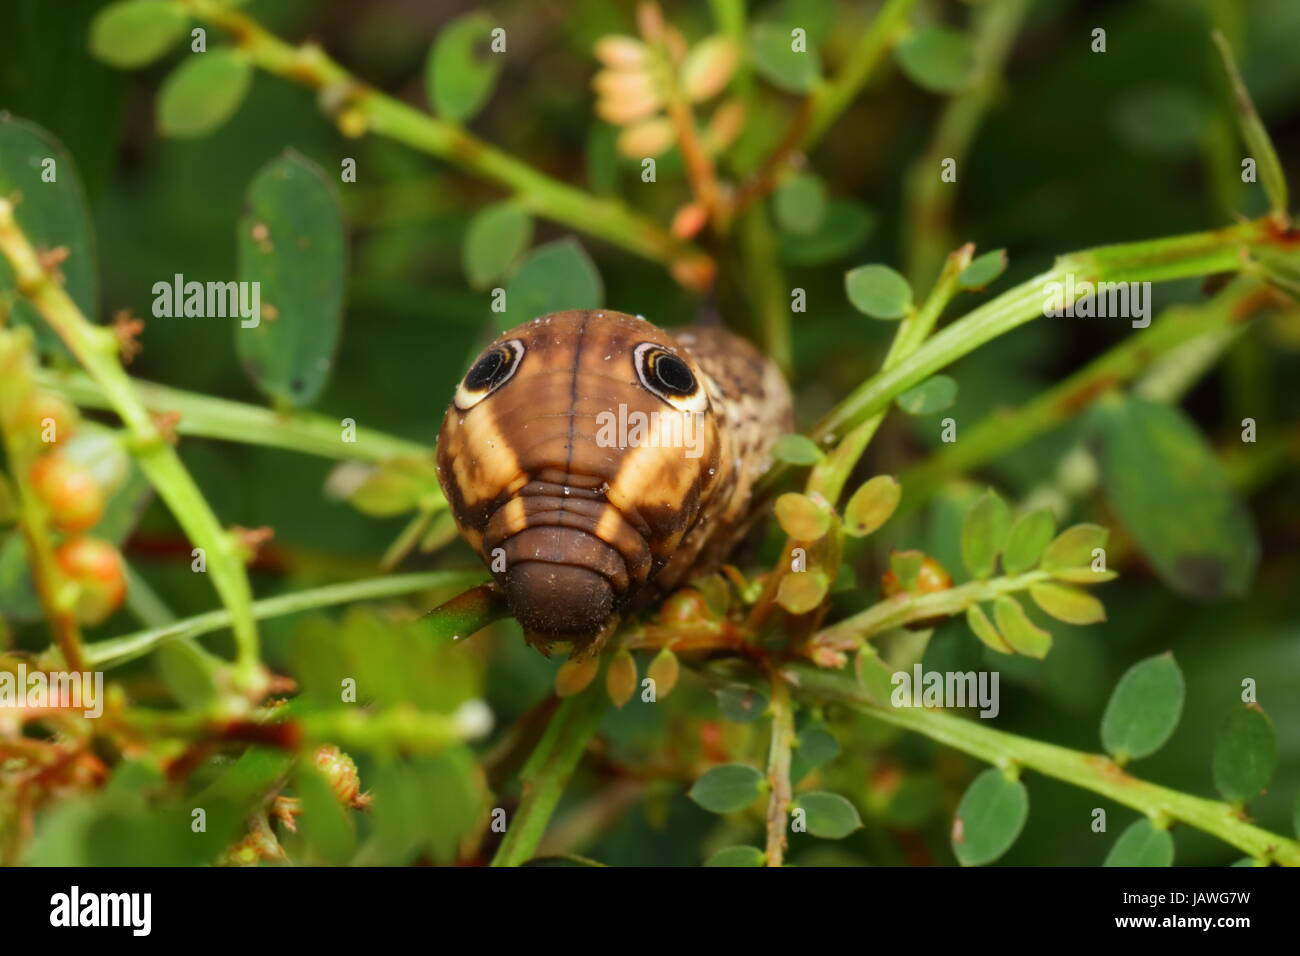 Une espèce de shinx tersa, Caterpillar tersa, rampant sur * * une tige de la plante. Banque D'Images